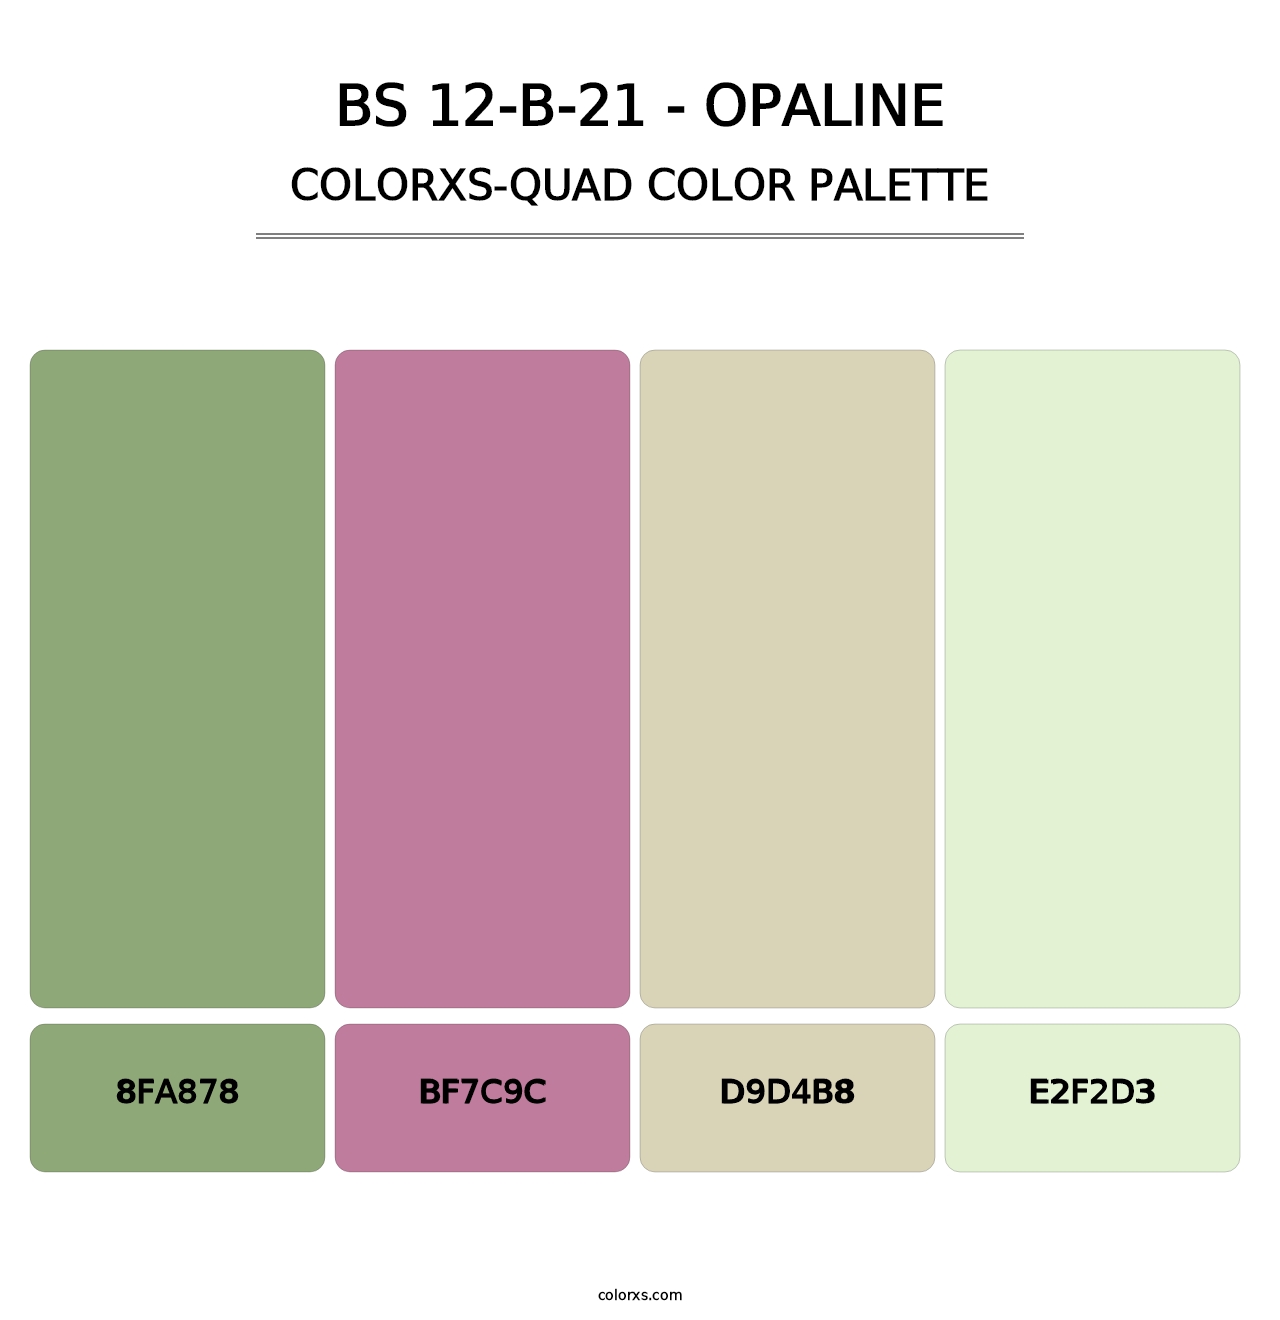 BS 12-B-21 - Opaline - Colorxs Quad Palette